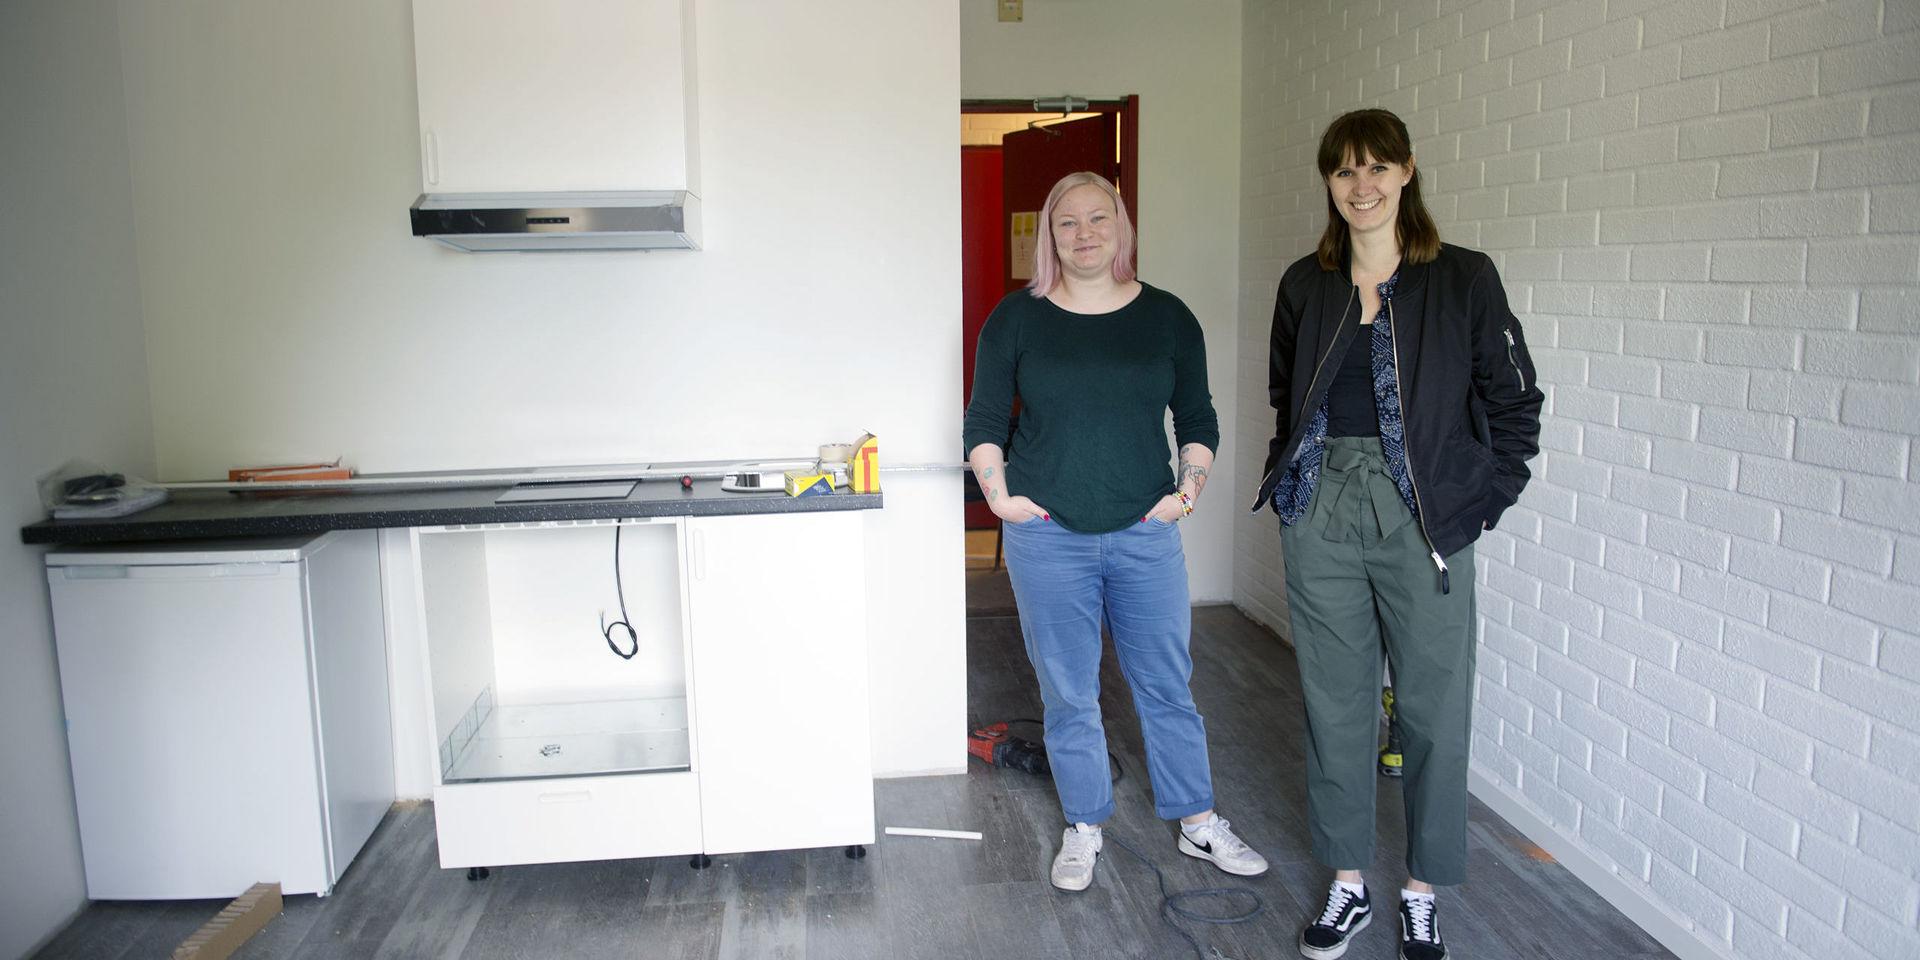 Marielle Bock och Hanne Göransson från Halmstad Studentkår tycker det är bra att alla får ett eget kökspentry på rummet när före detta Arena Hotel byggs om.